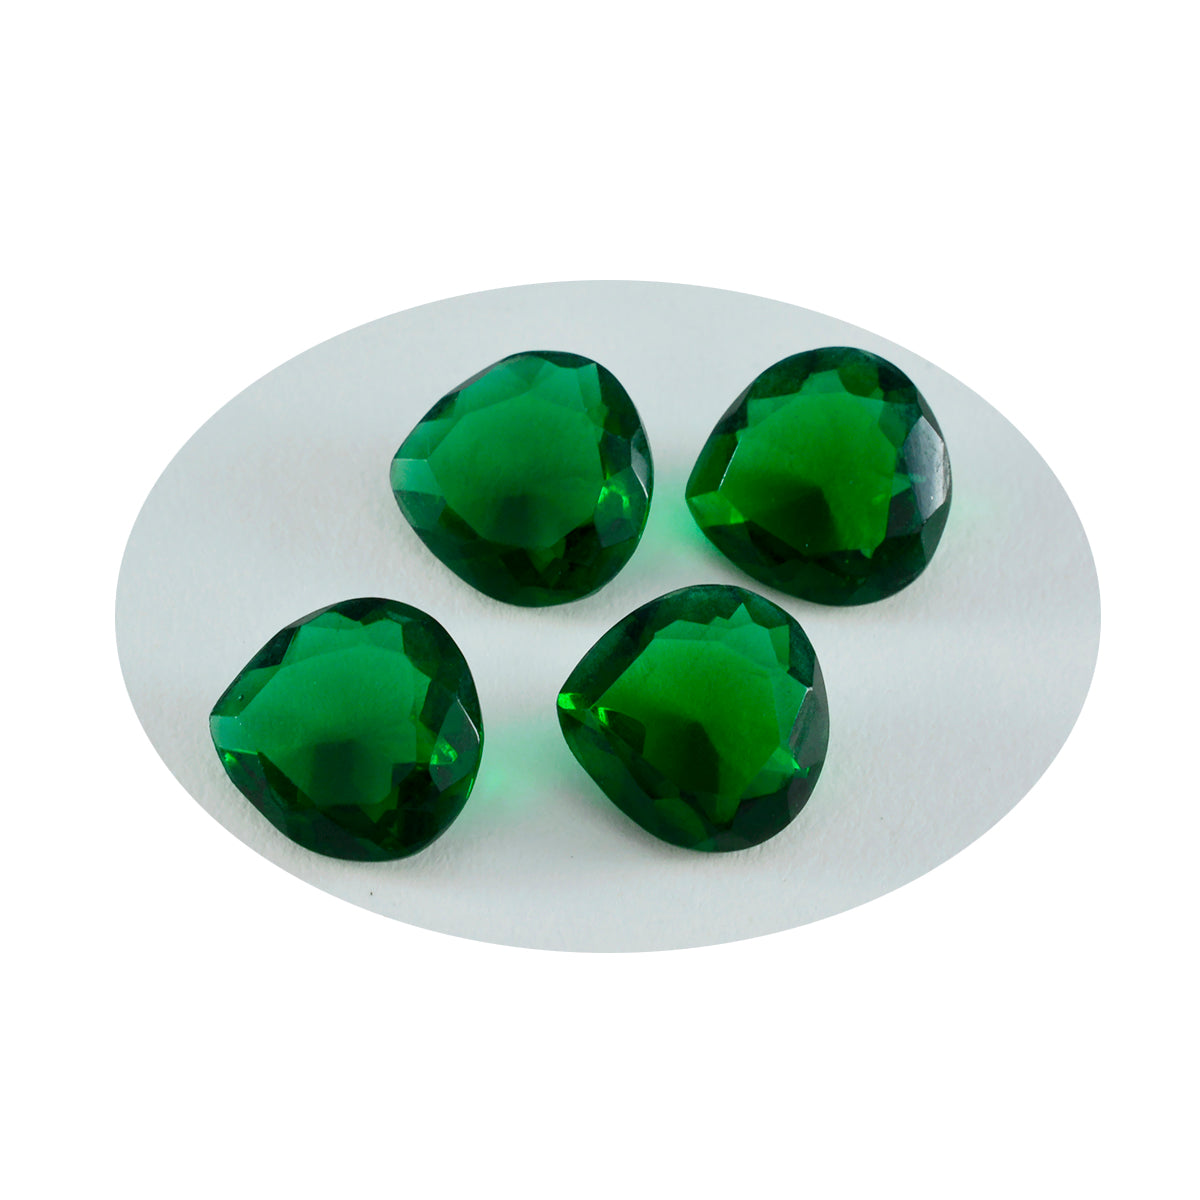 riyogems 1 pezzo di smeraldo verde cz sfaccettato 13x13 mm a forma di cuore con pietre preziose sfuse di qualità dolce